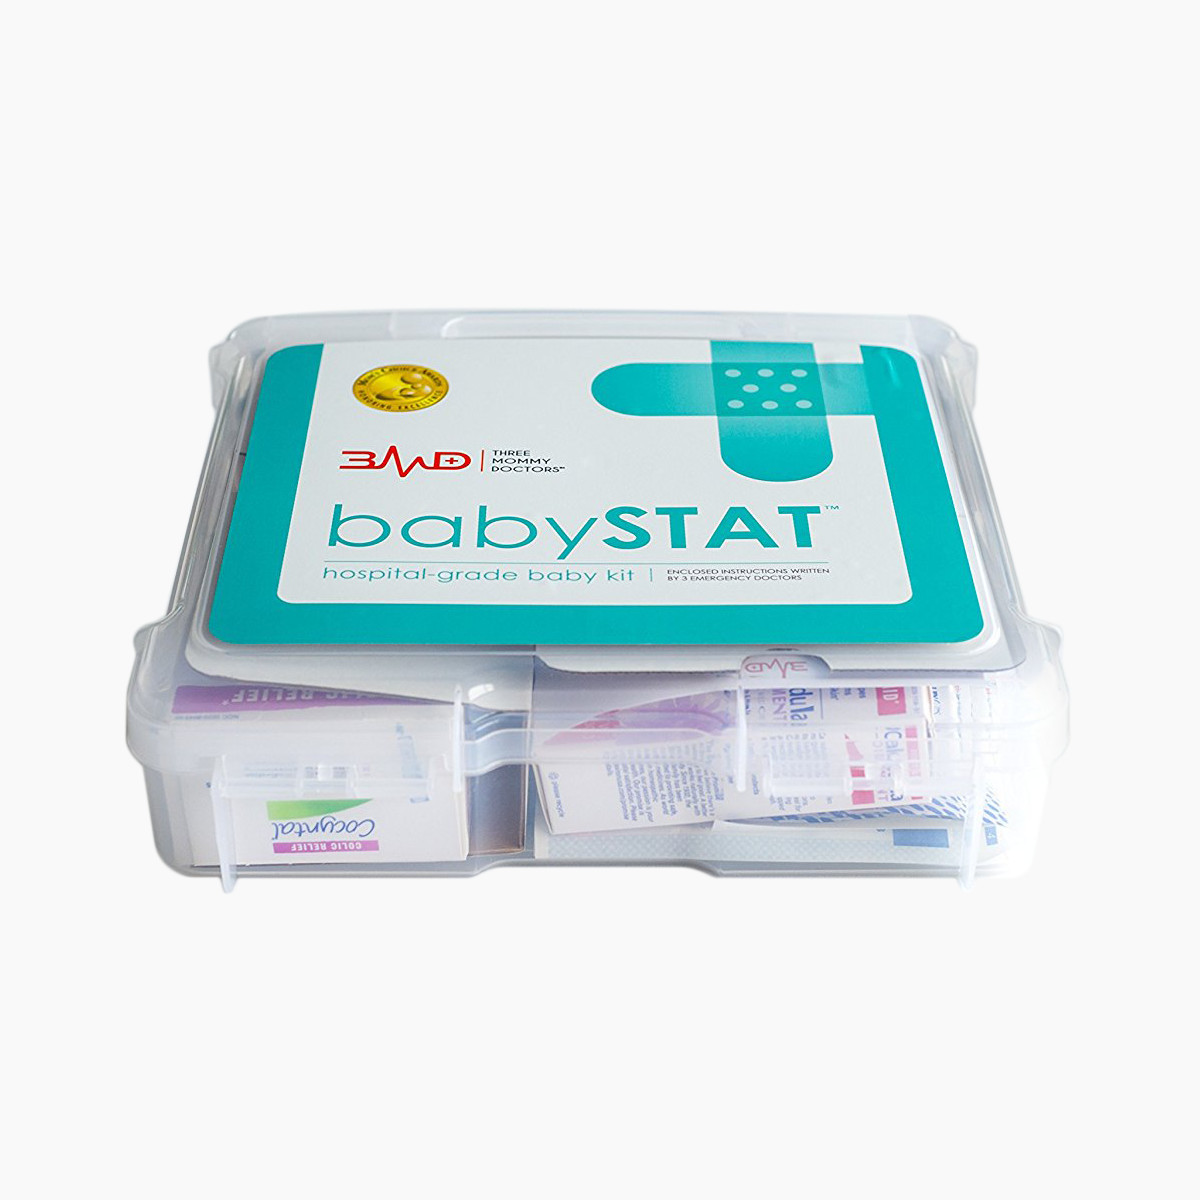 3MD babySTAT Hospital-Grade Baby Kit.